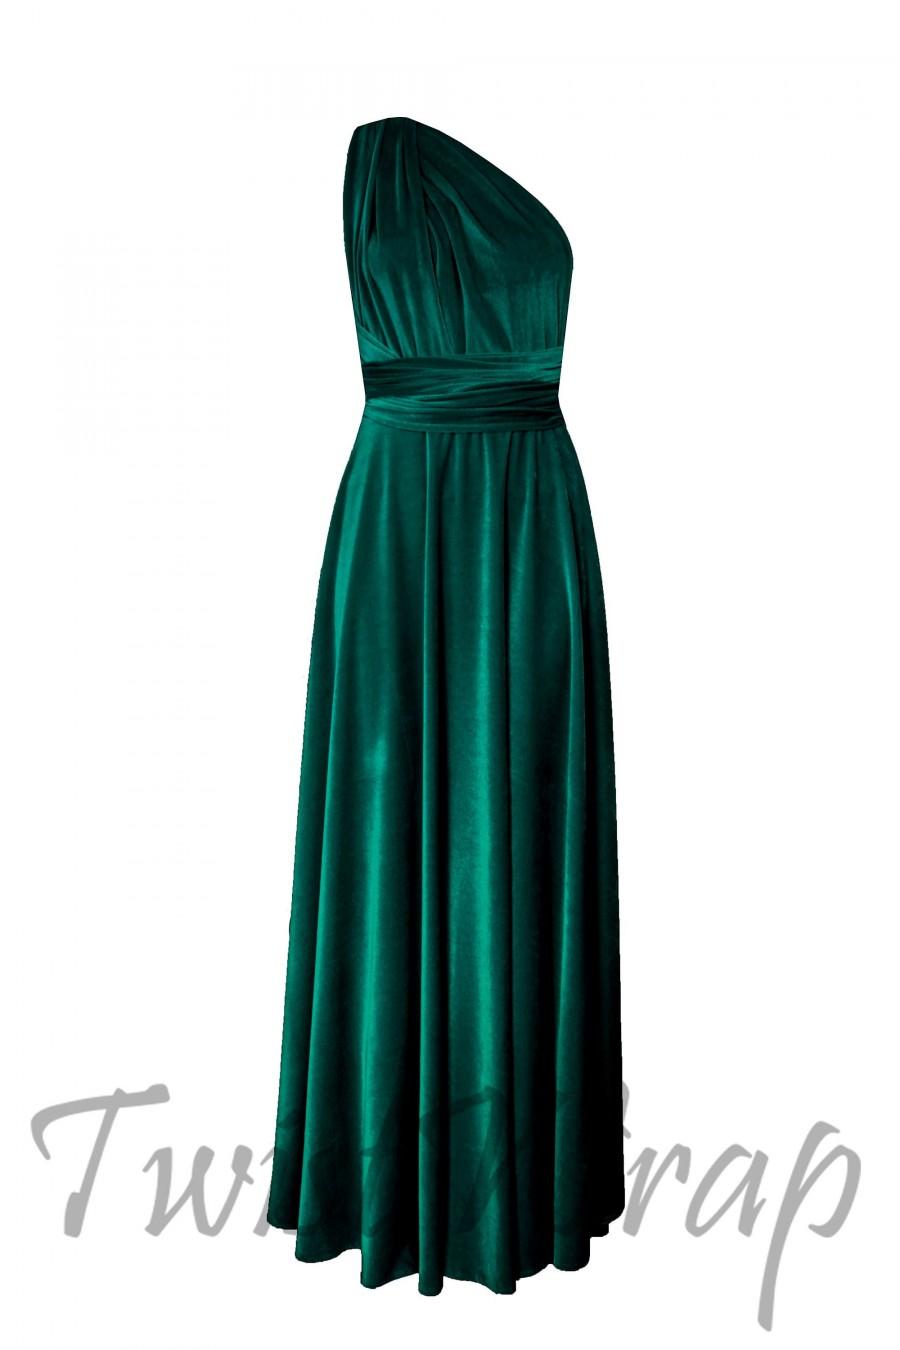 Hochzeit - Velvet Dress Dark Green Infinity Dress Bridesmaids Dress Long Convertible Dress Formal Maternity Dress Plus Size Prom Dress